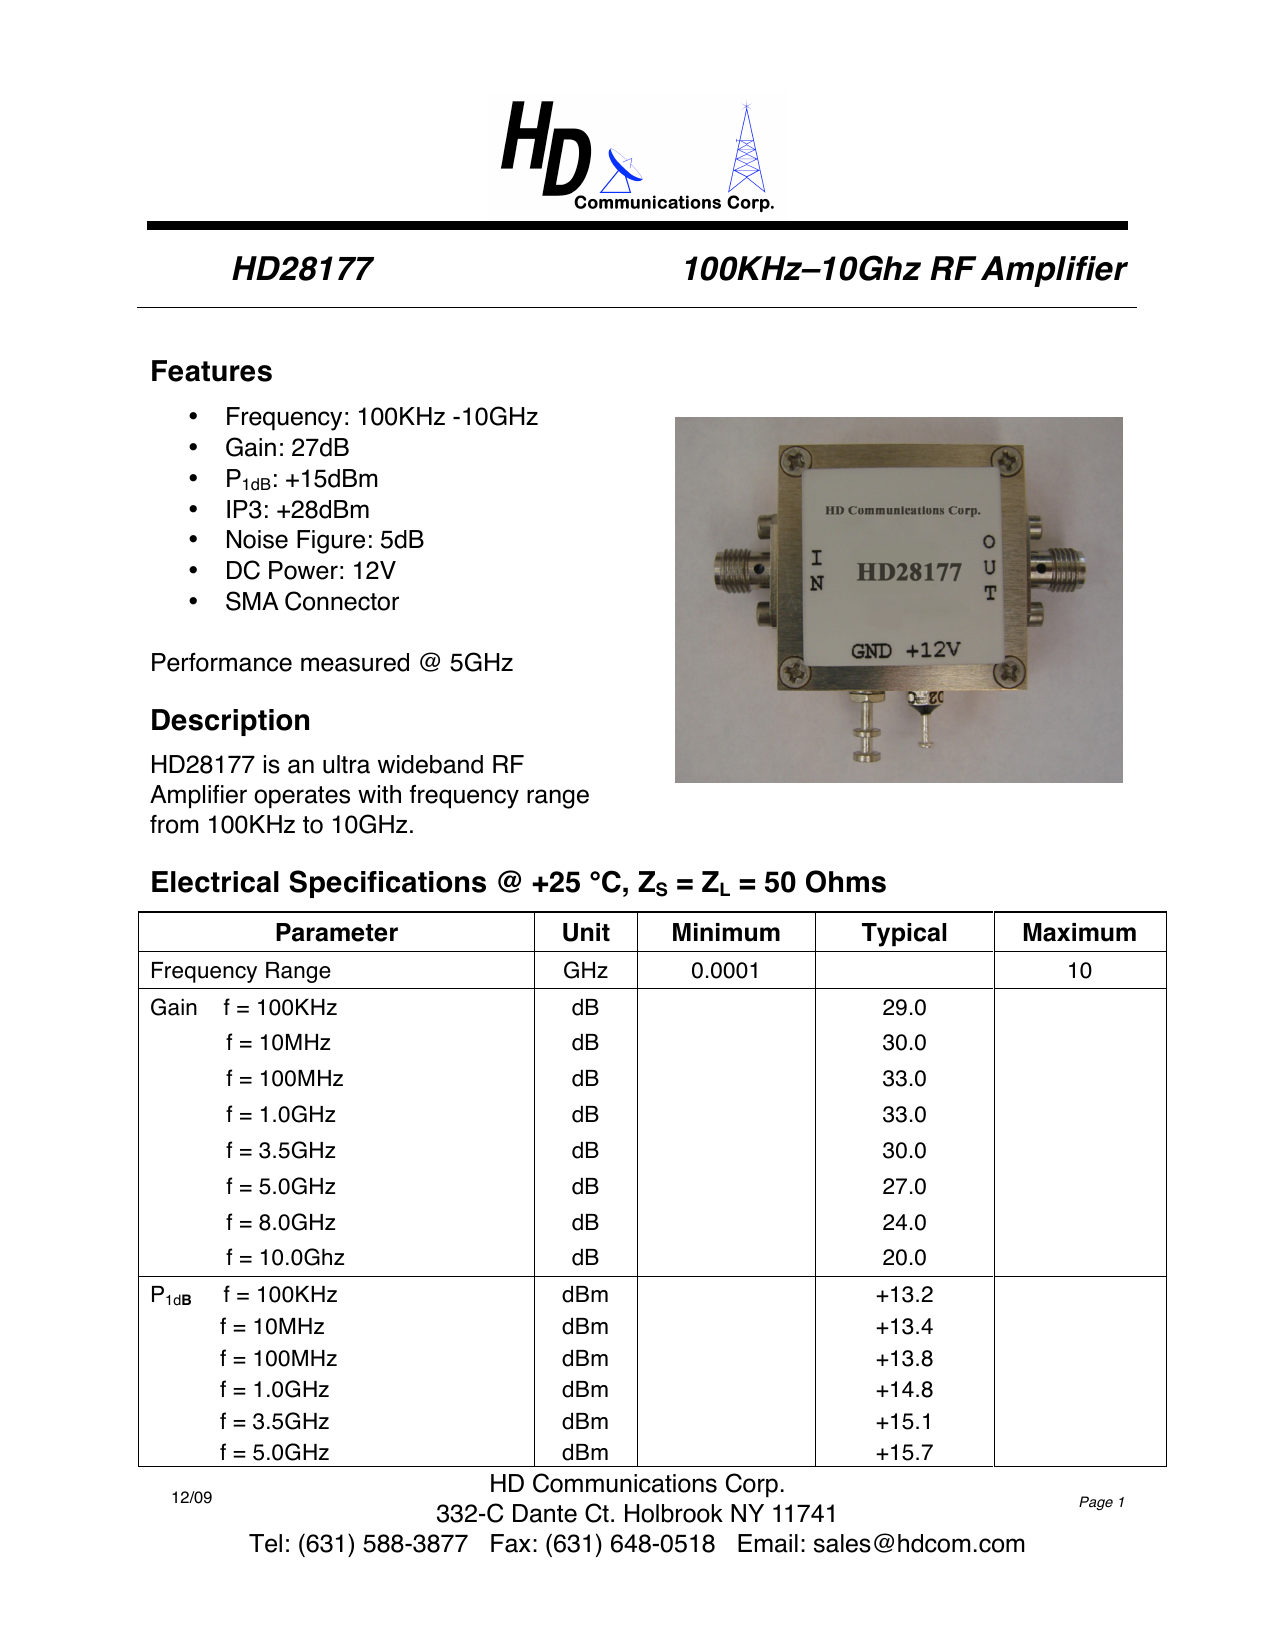 New LPA-10-20 SMA 100KHz-10GHz Wideband RF Amplifier 